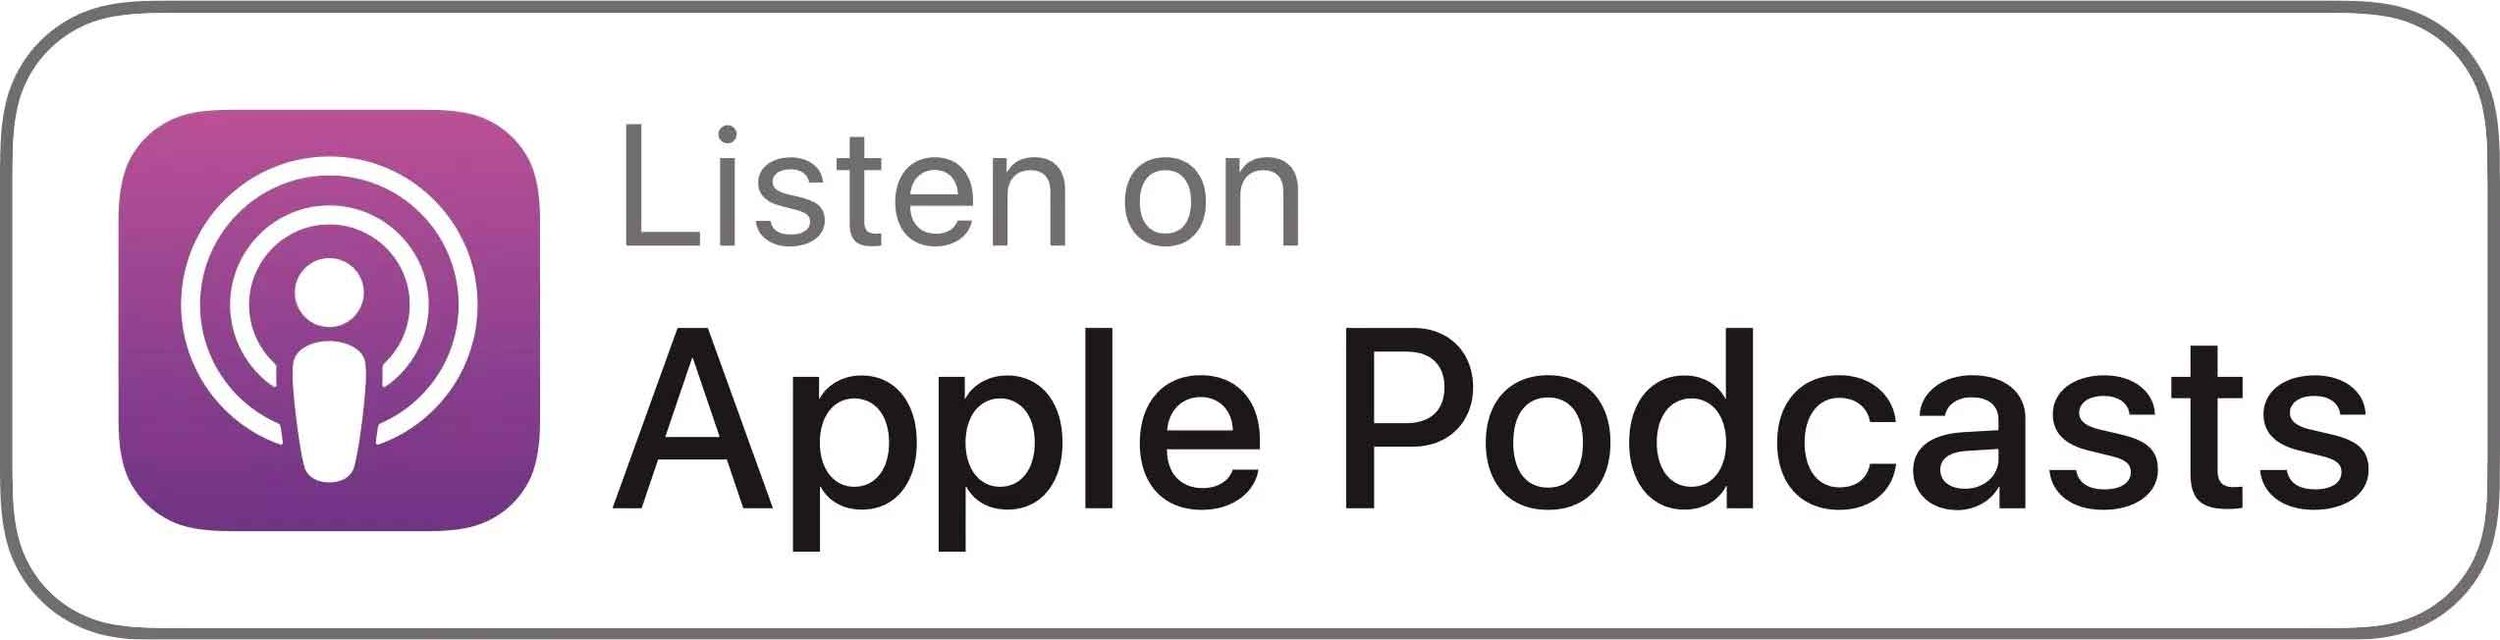 apple-podcast-logo 2.jpg